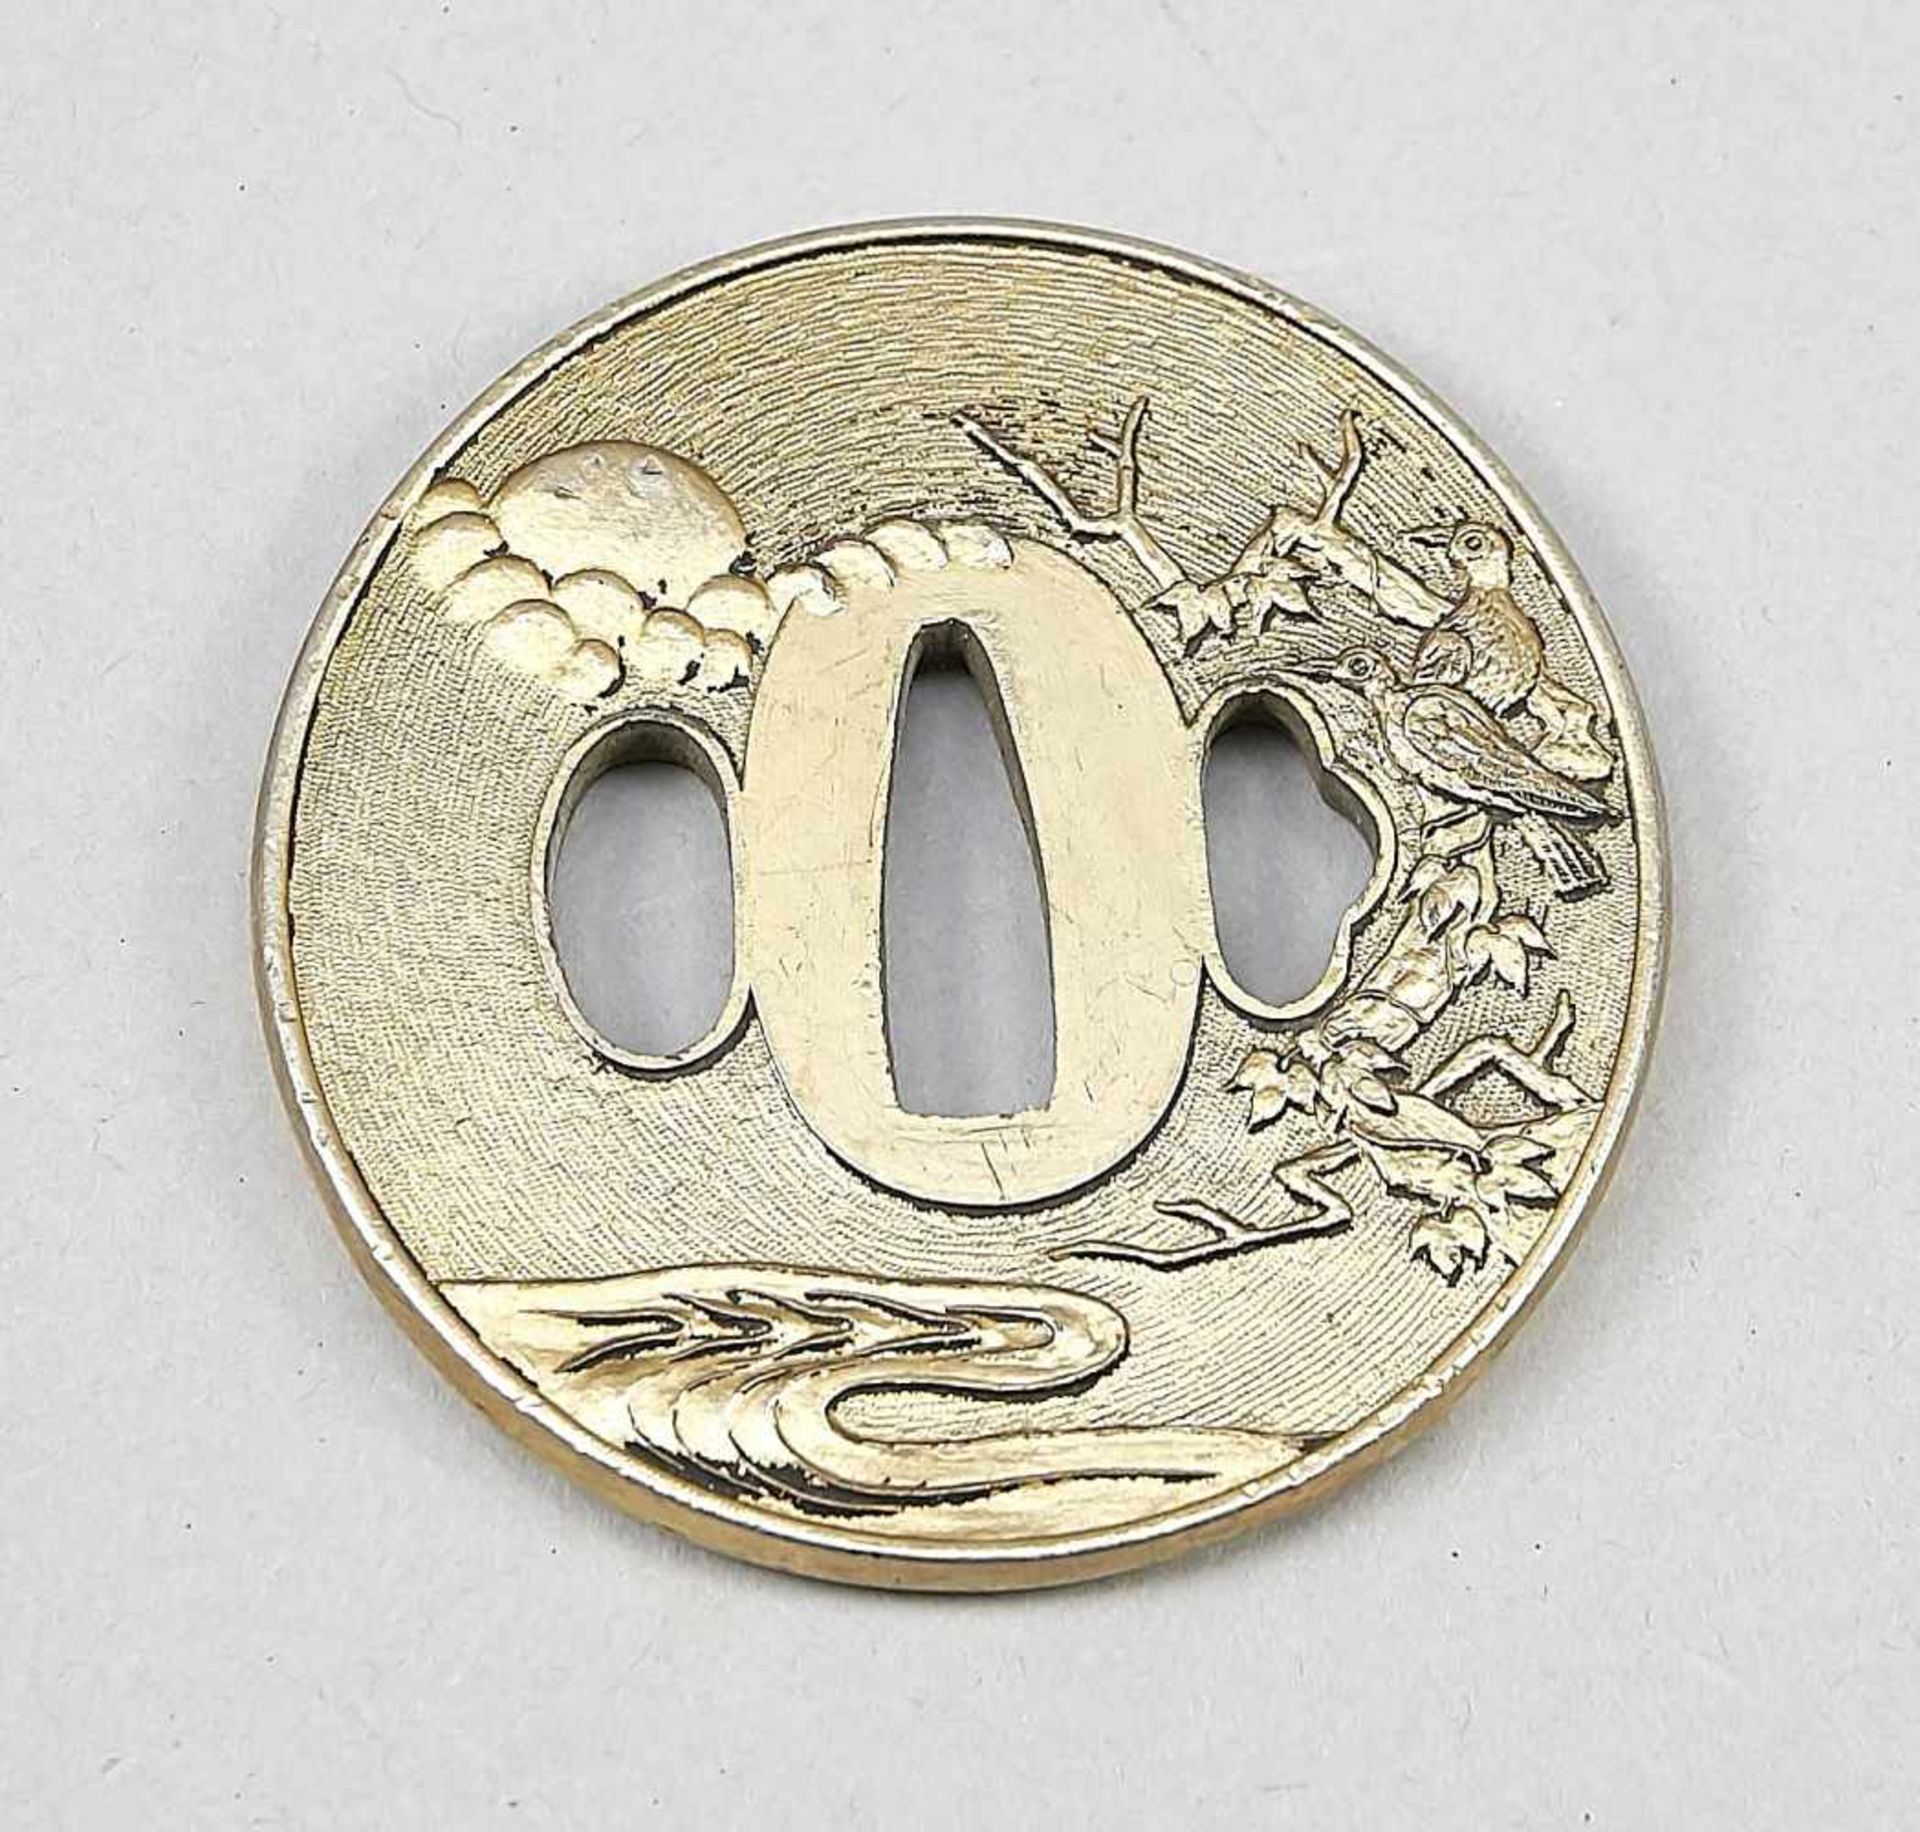 Tsuba, Japan, 19. Jh. Metall vergoldet. Leicht ovale Form mit Ahorn, Vögeln, Wolkenbändernvor fein